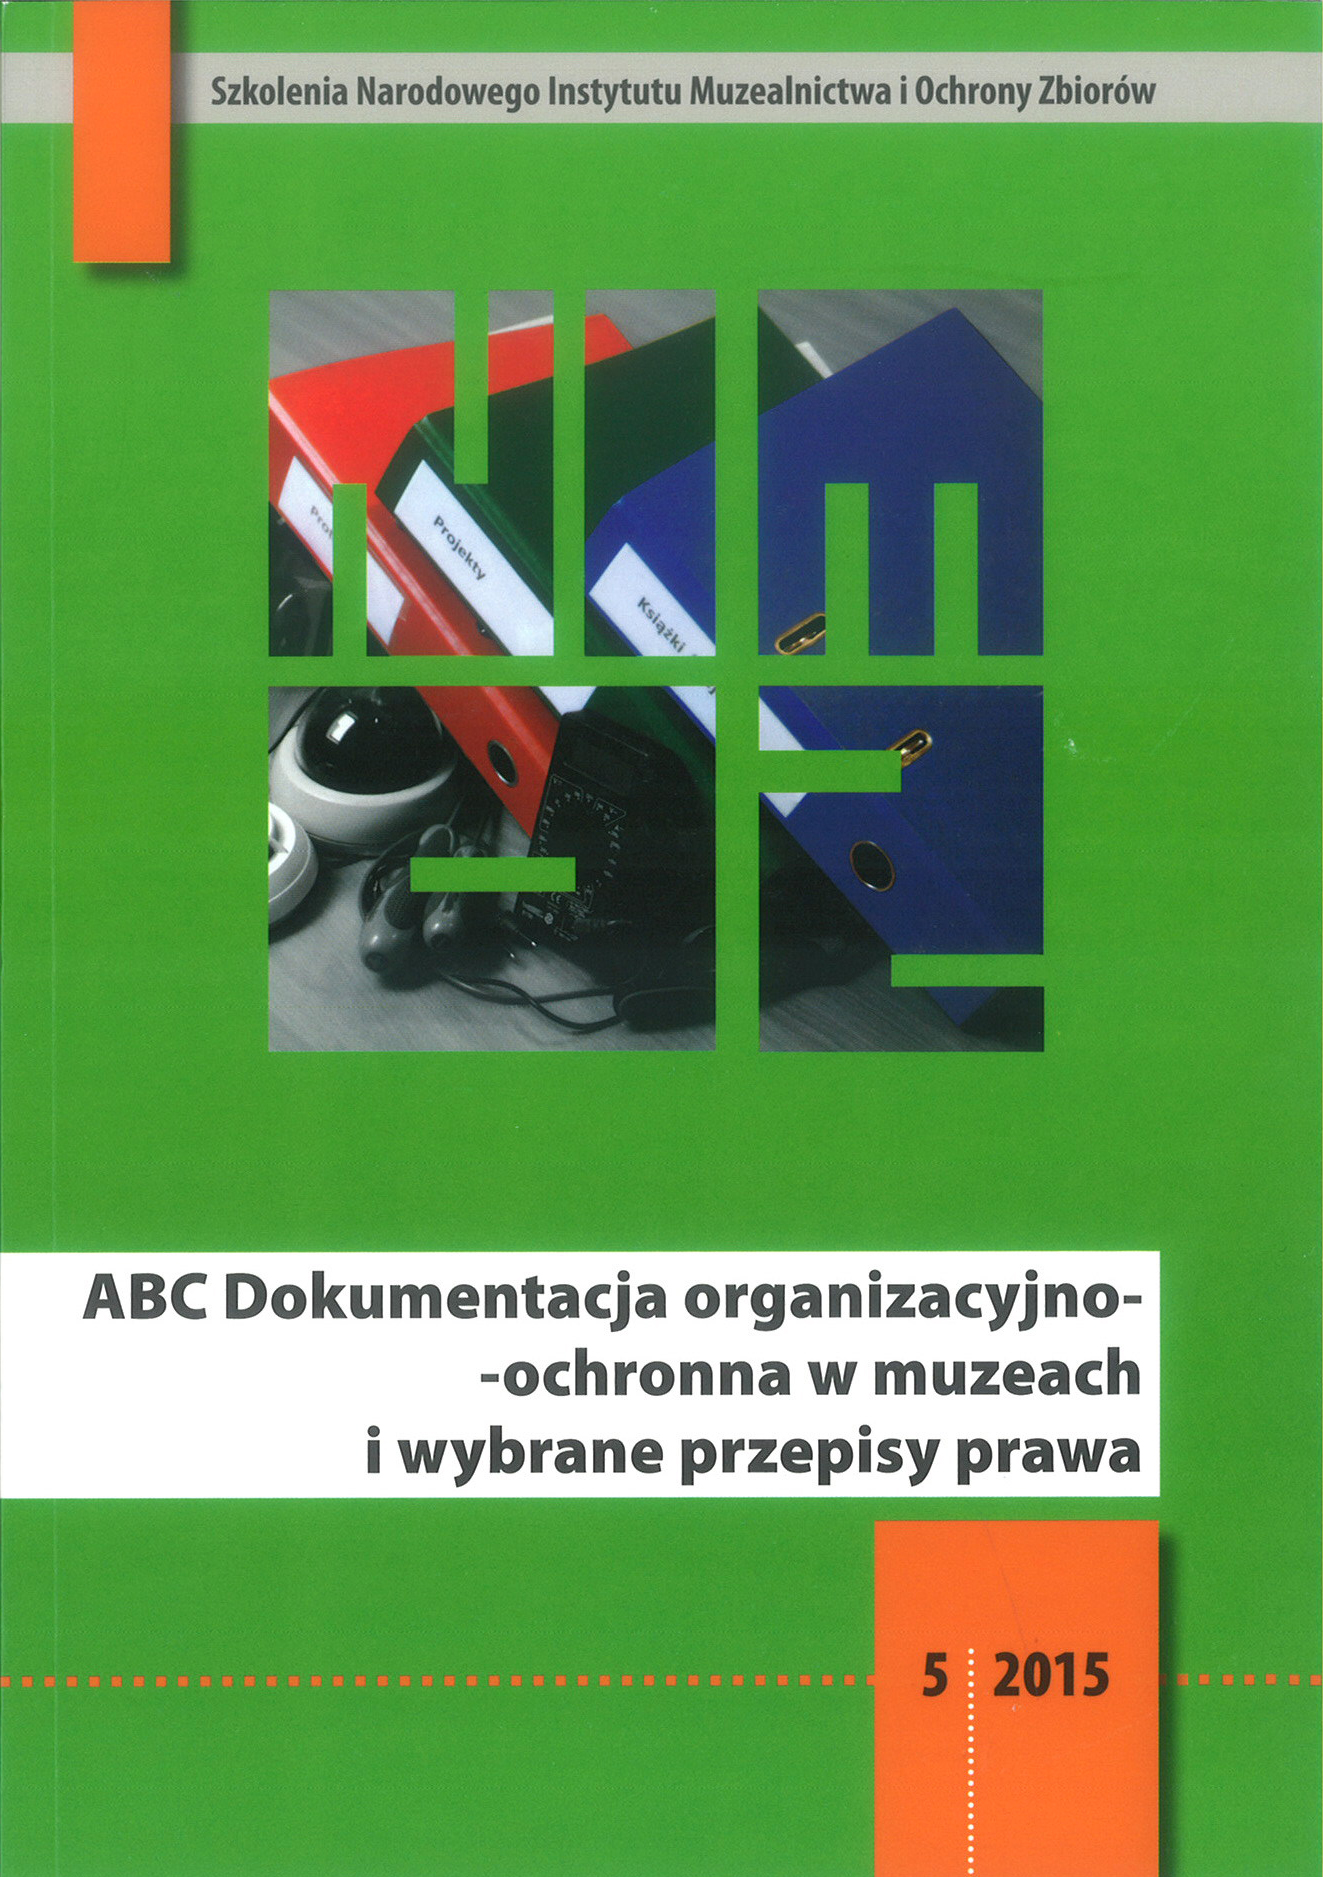 ABC Dokumentacja organizacyjno-ochronna w muzeach i wybrane przepisy prawa